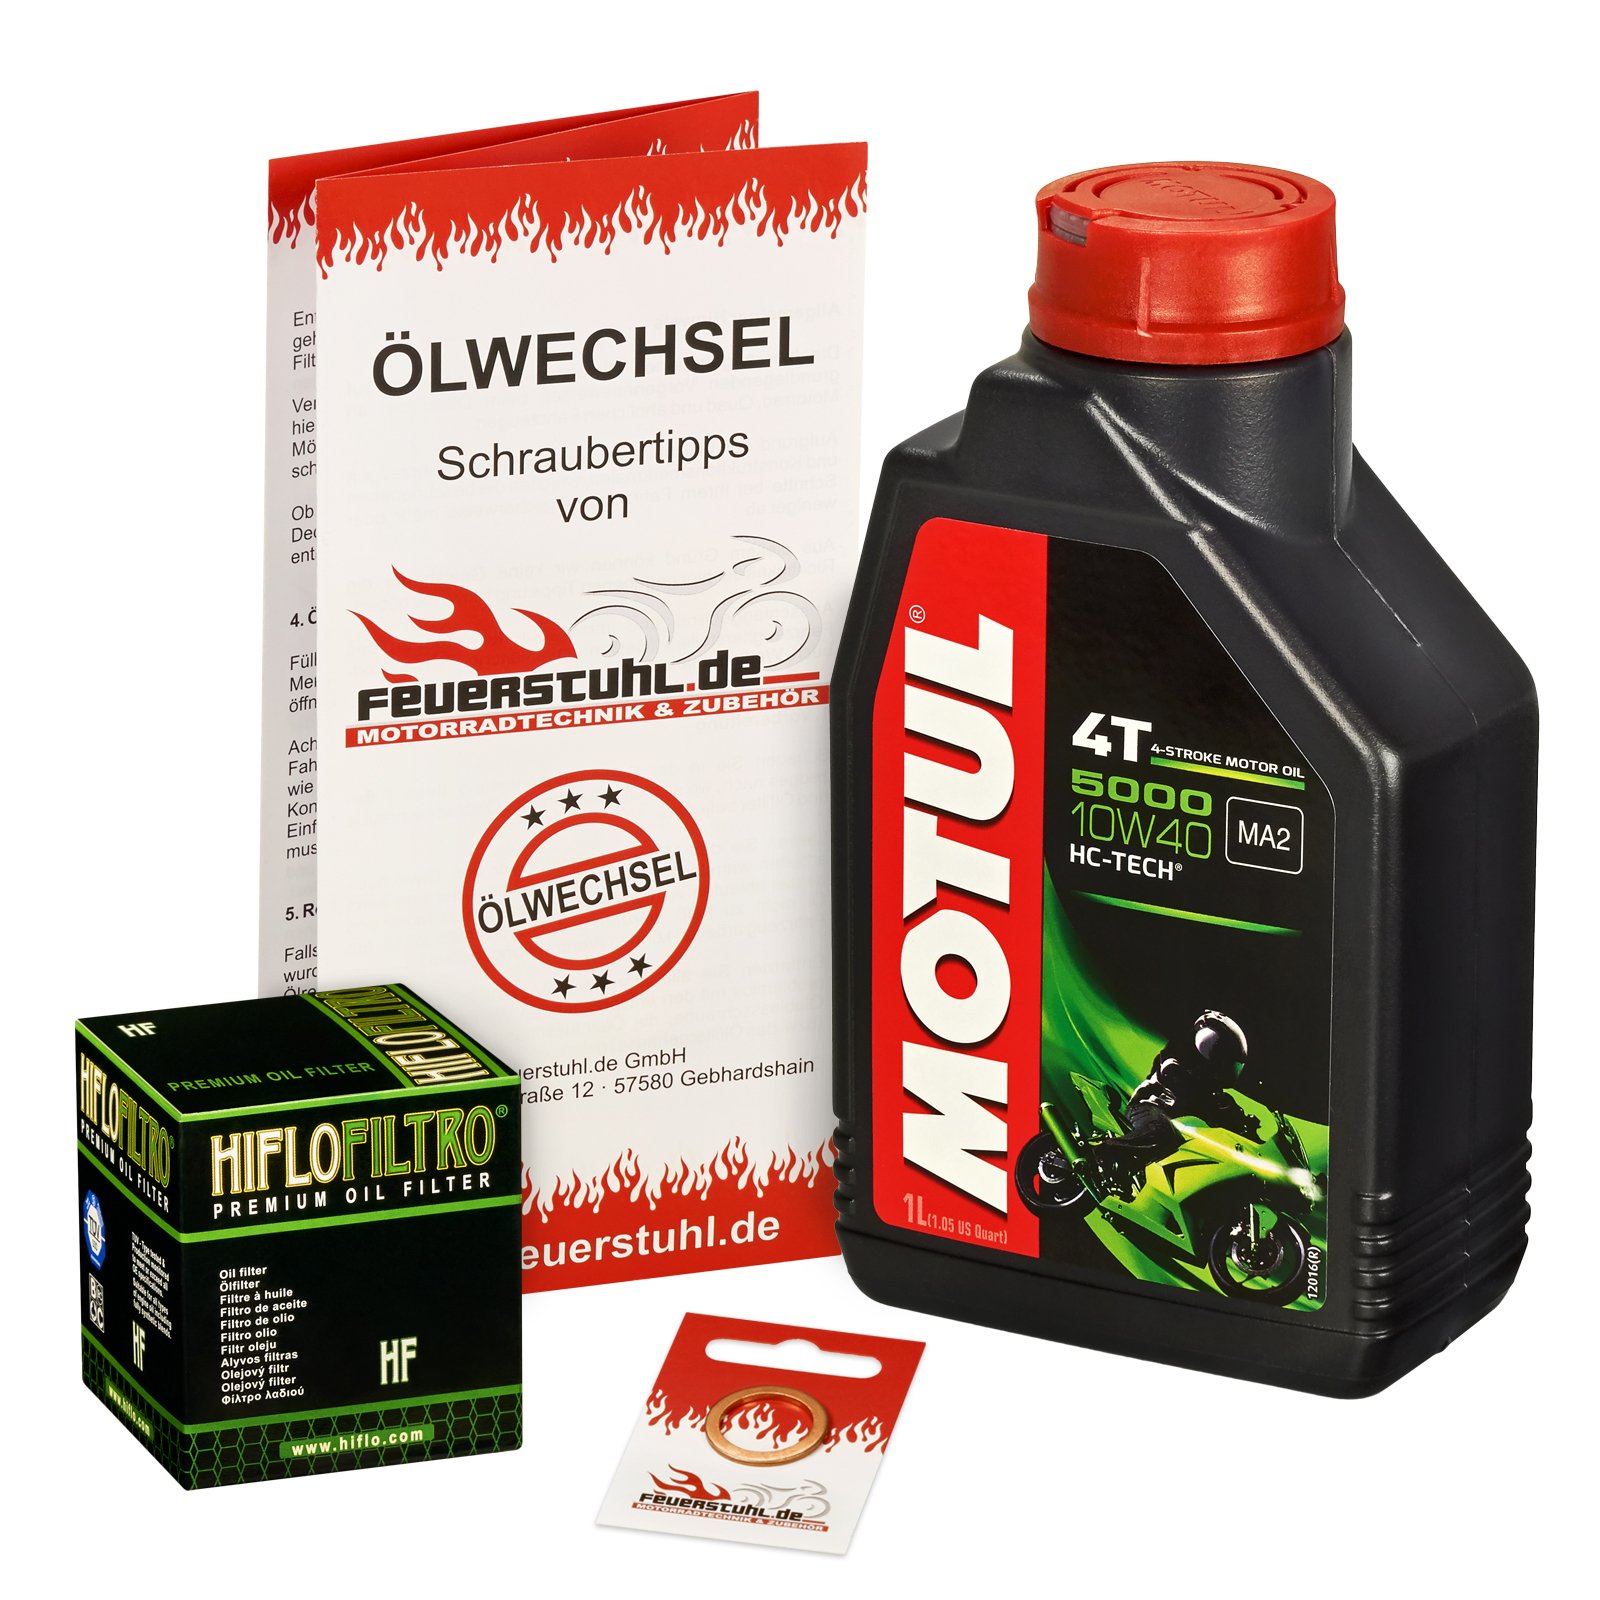 Motul 10W-40 Öl + HiFlo Ölfilter für BMW C1 125, 00-04, C1 - Ölwechselset inkl. Motoröl, Filter, Dichtring von Feuerstuhl.de GmbH